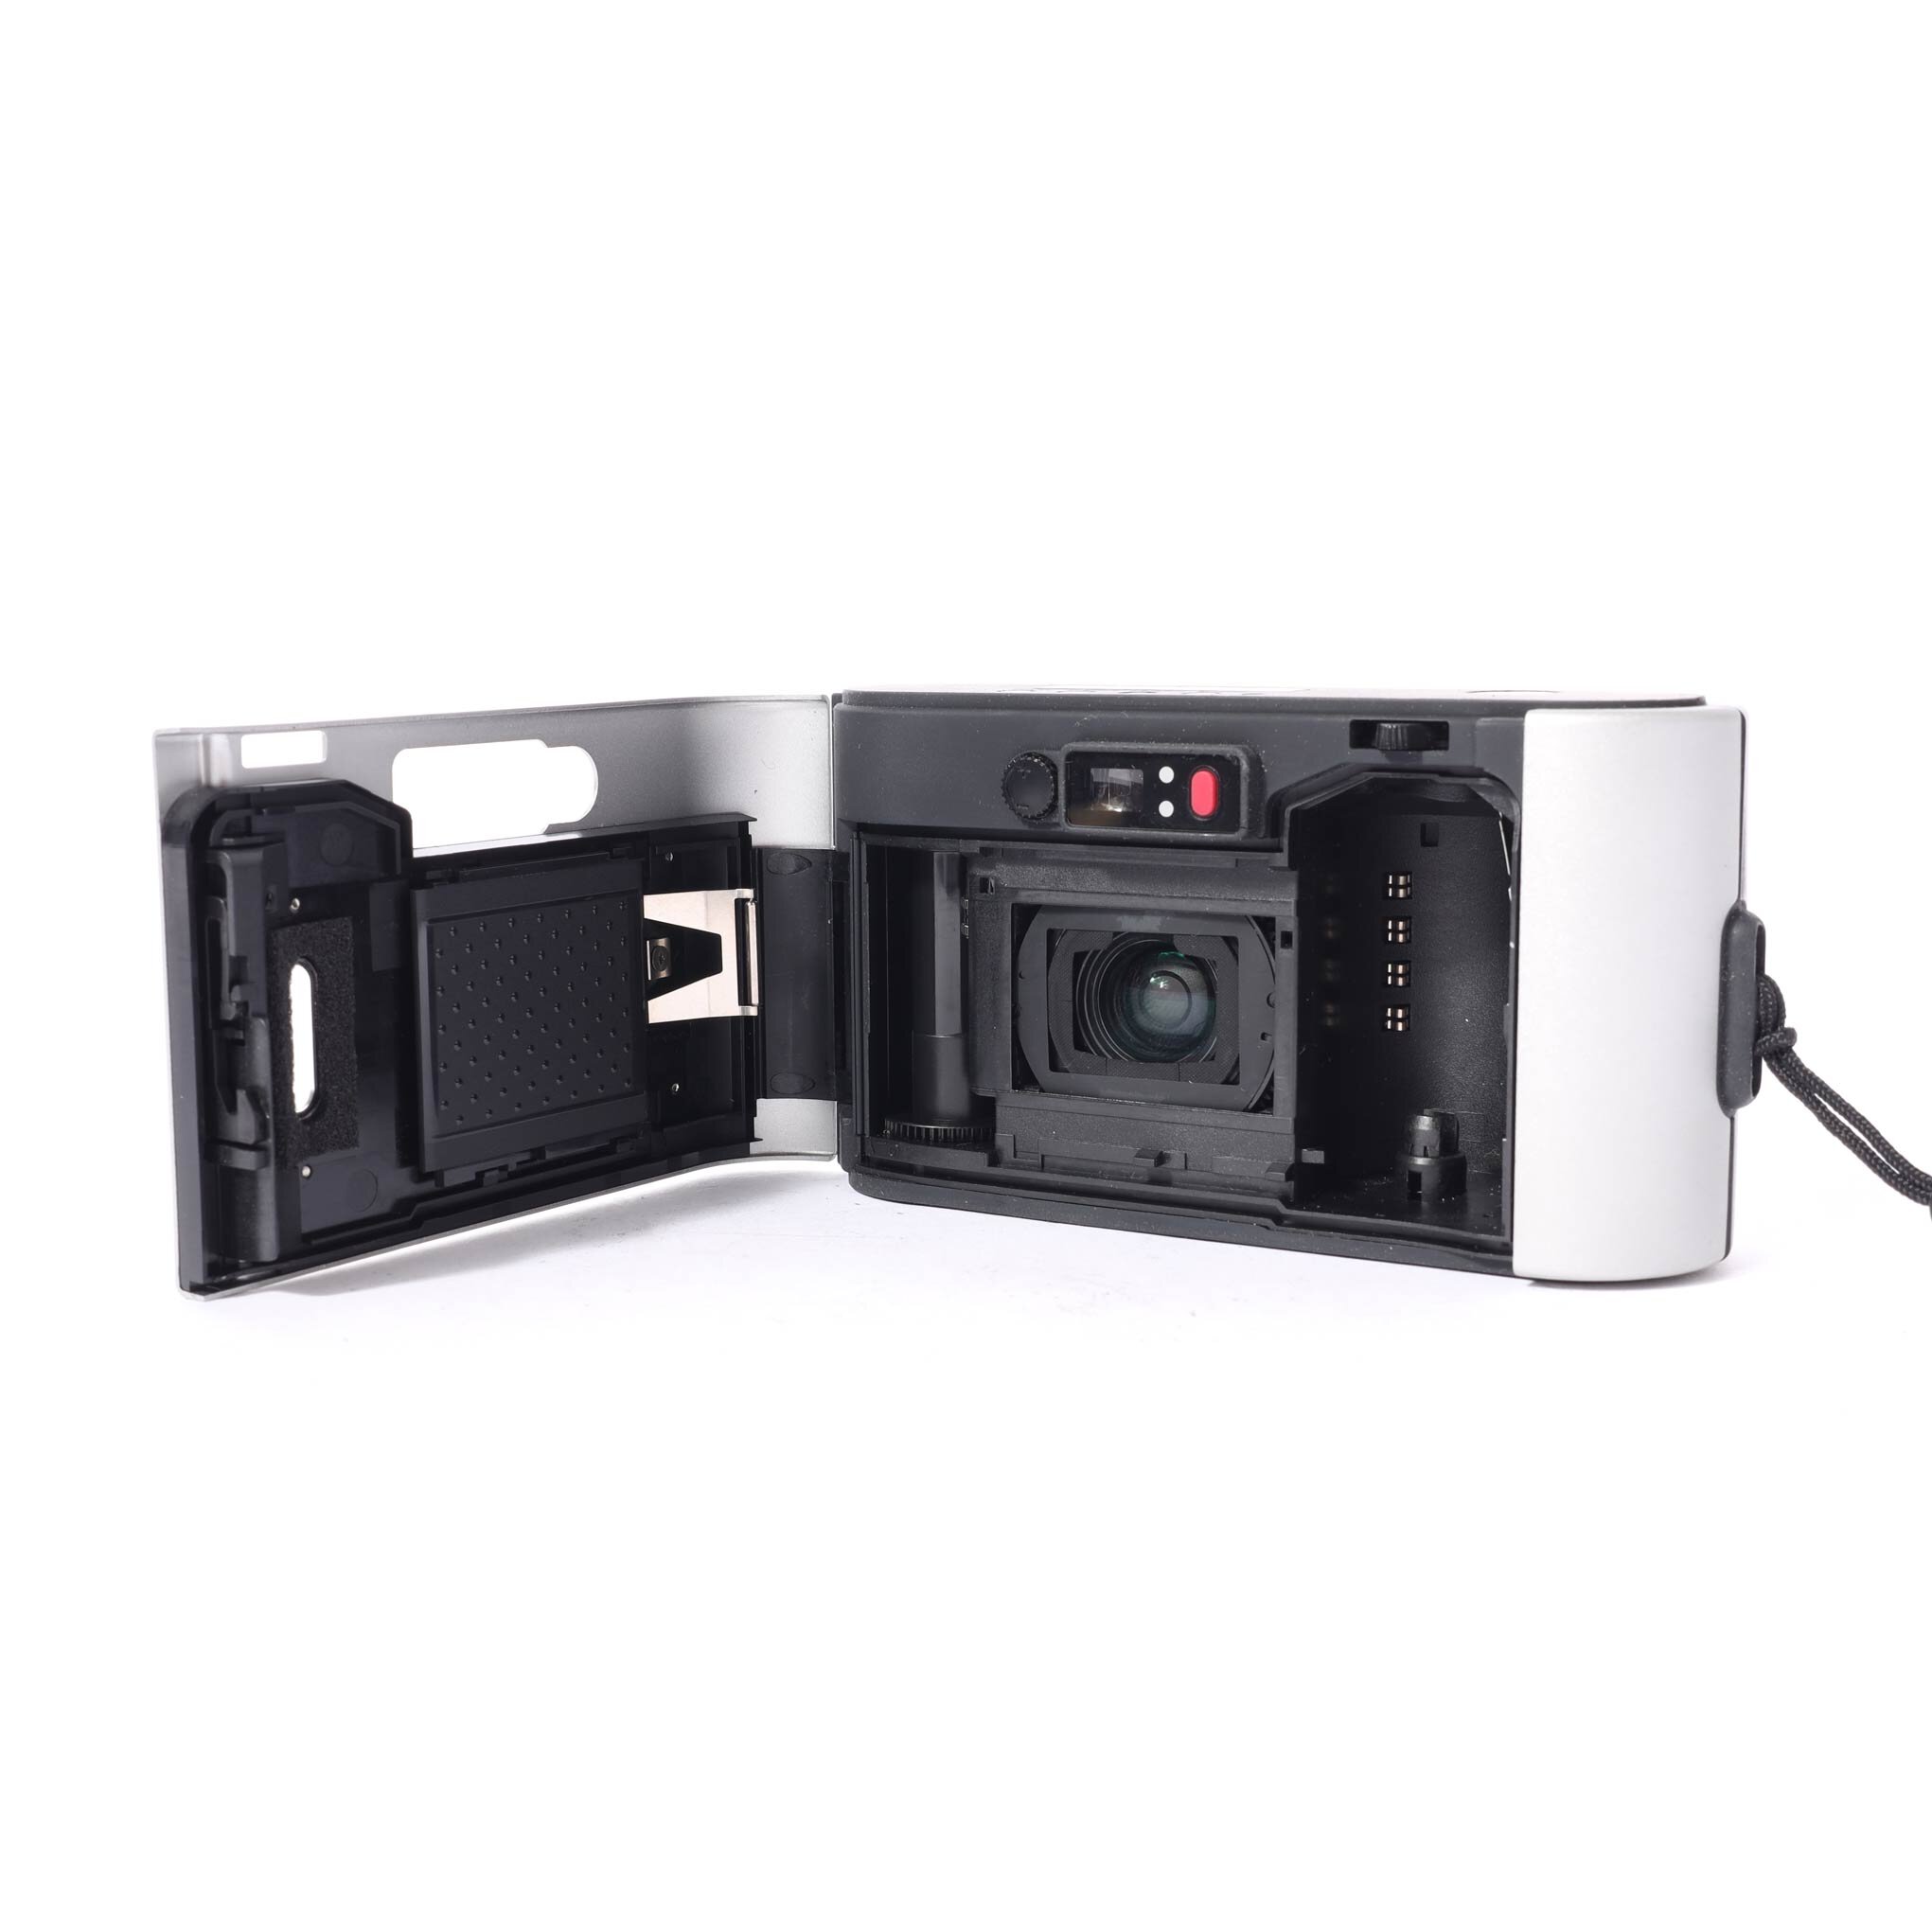 Leica Leitz C2 Vario-Elmar 35-70mm analoge Kompaktkamera